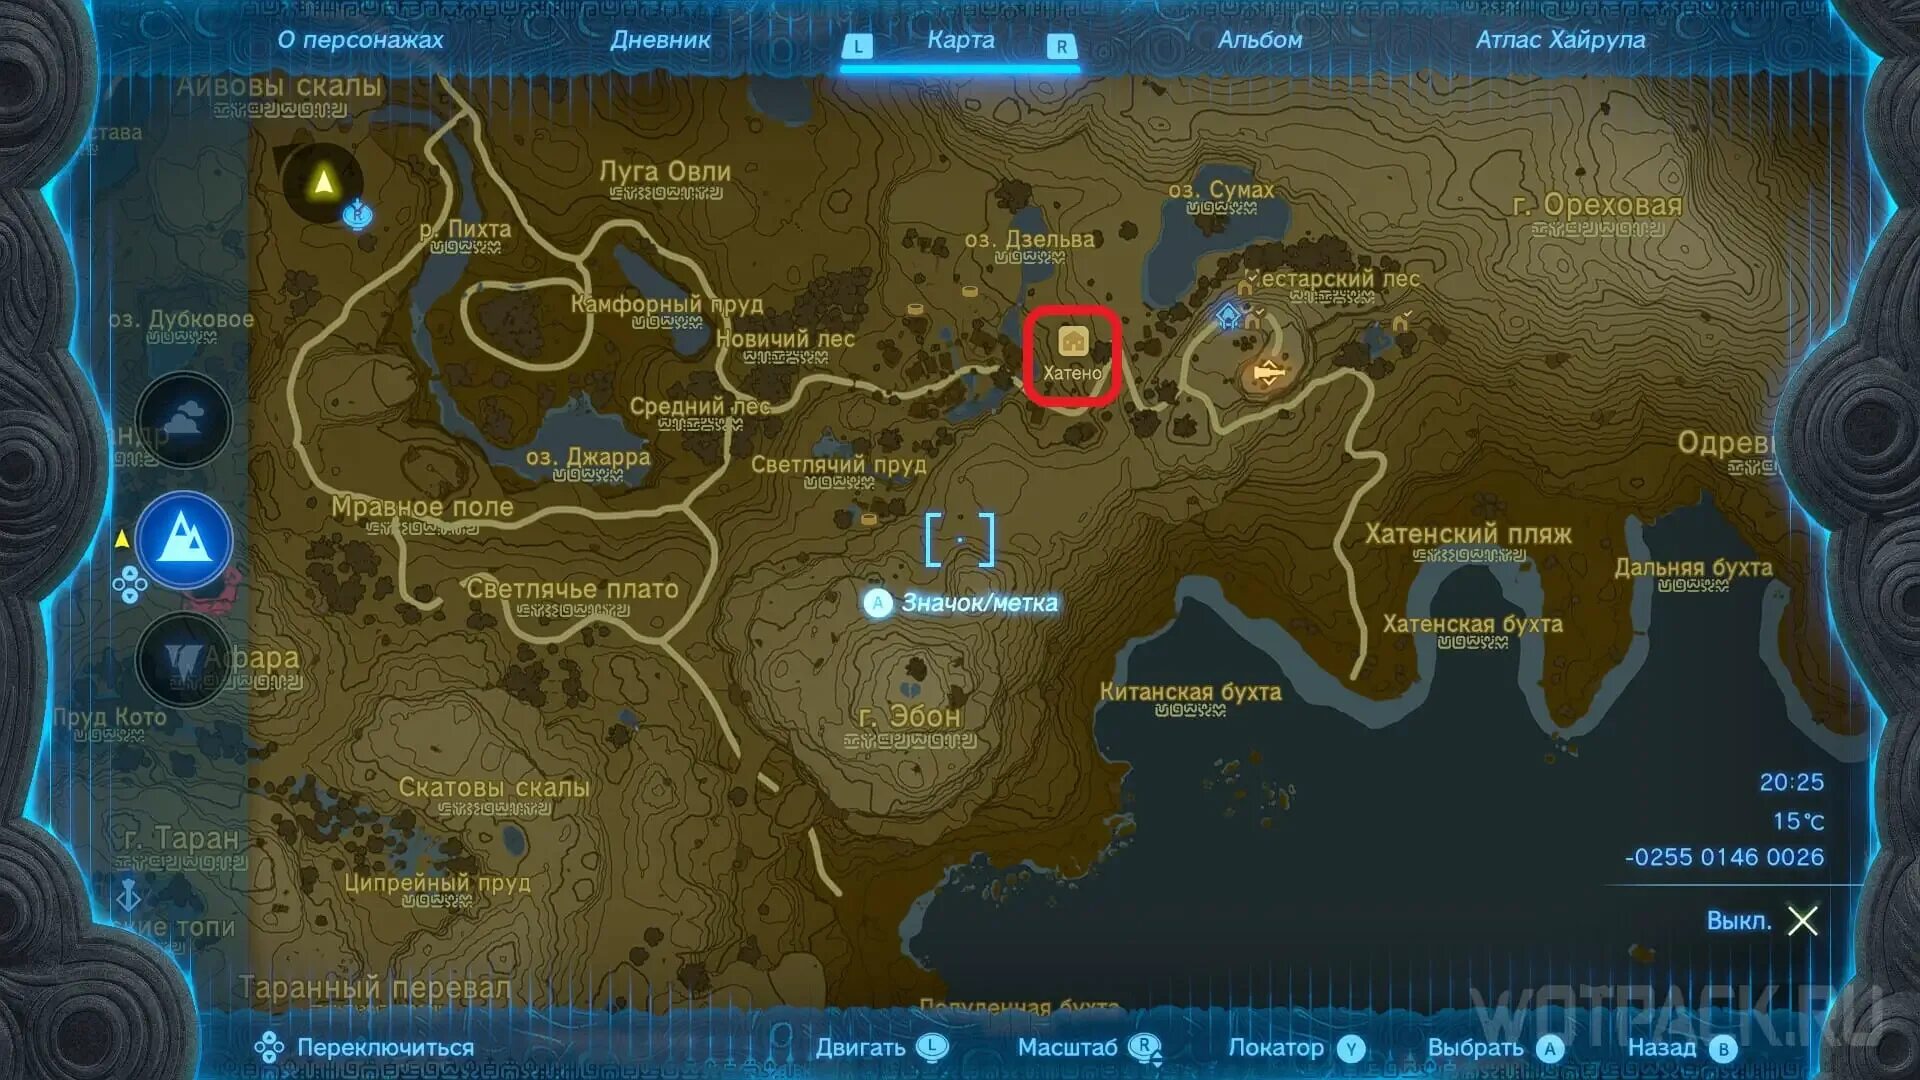 Kingdom где сохранения. Хатено Зельда. Zelda карта. Zelda Map.